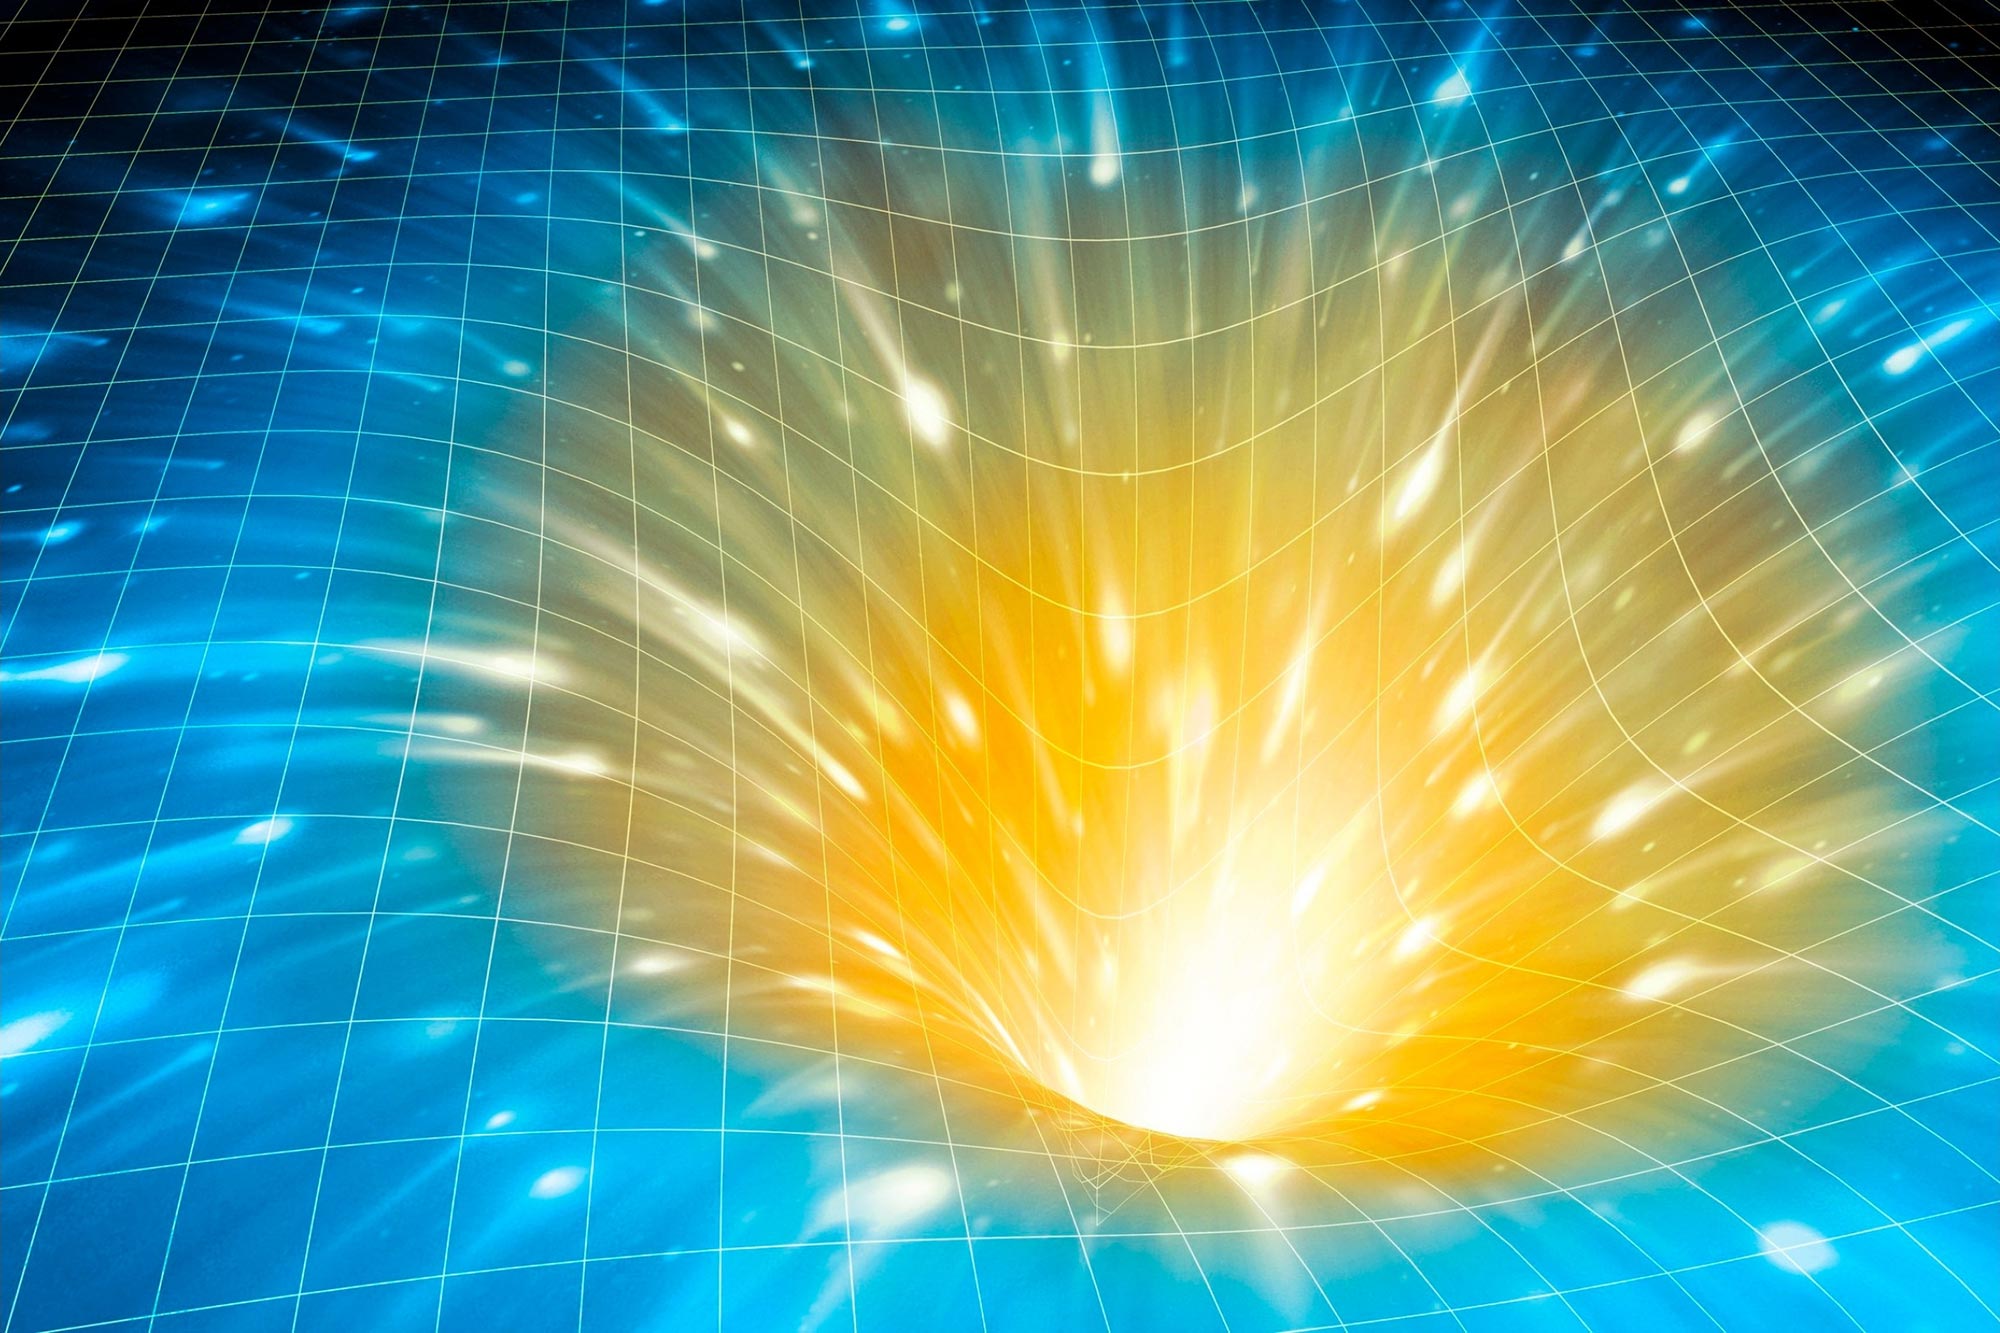 “Sihir” kuantum dan kekacauan lubang hitam dapat membantu menjelaskan asal mula ruang-waktu